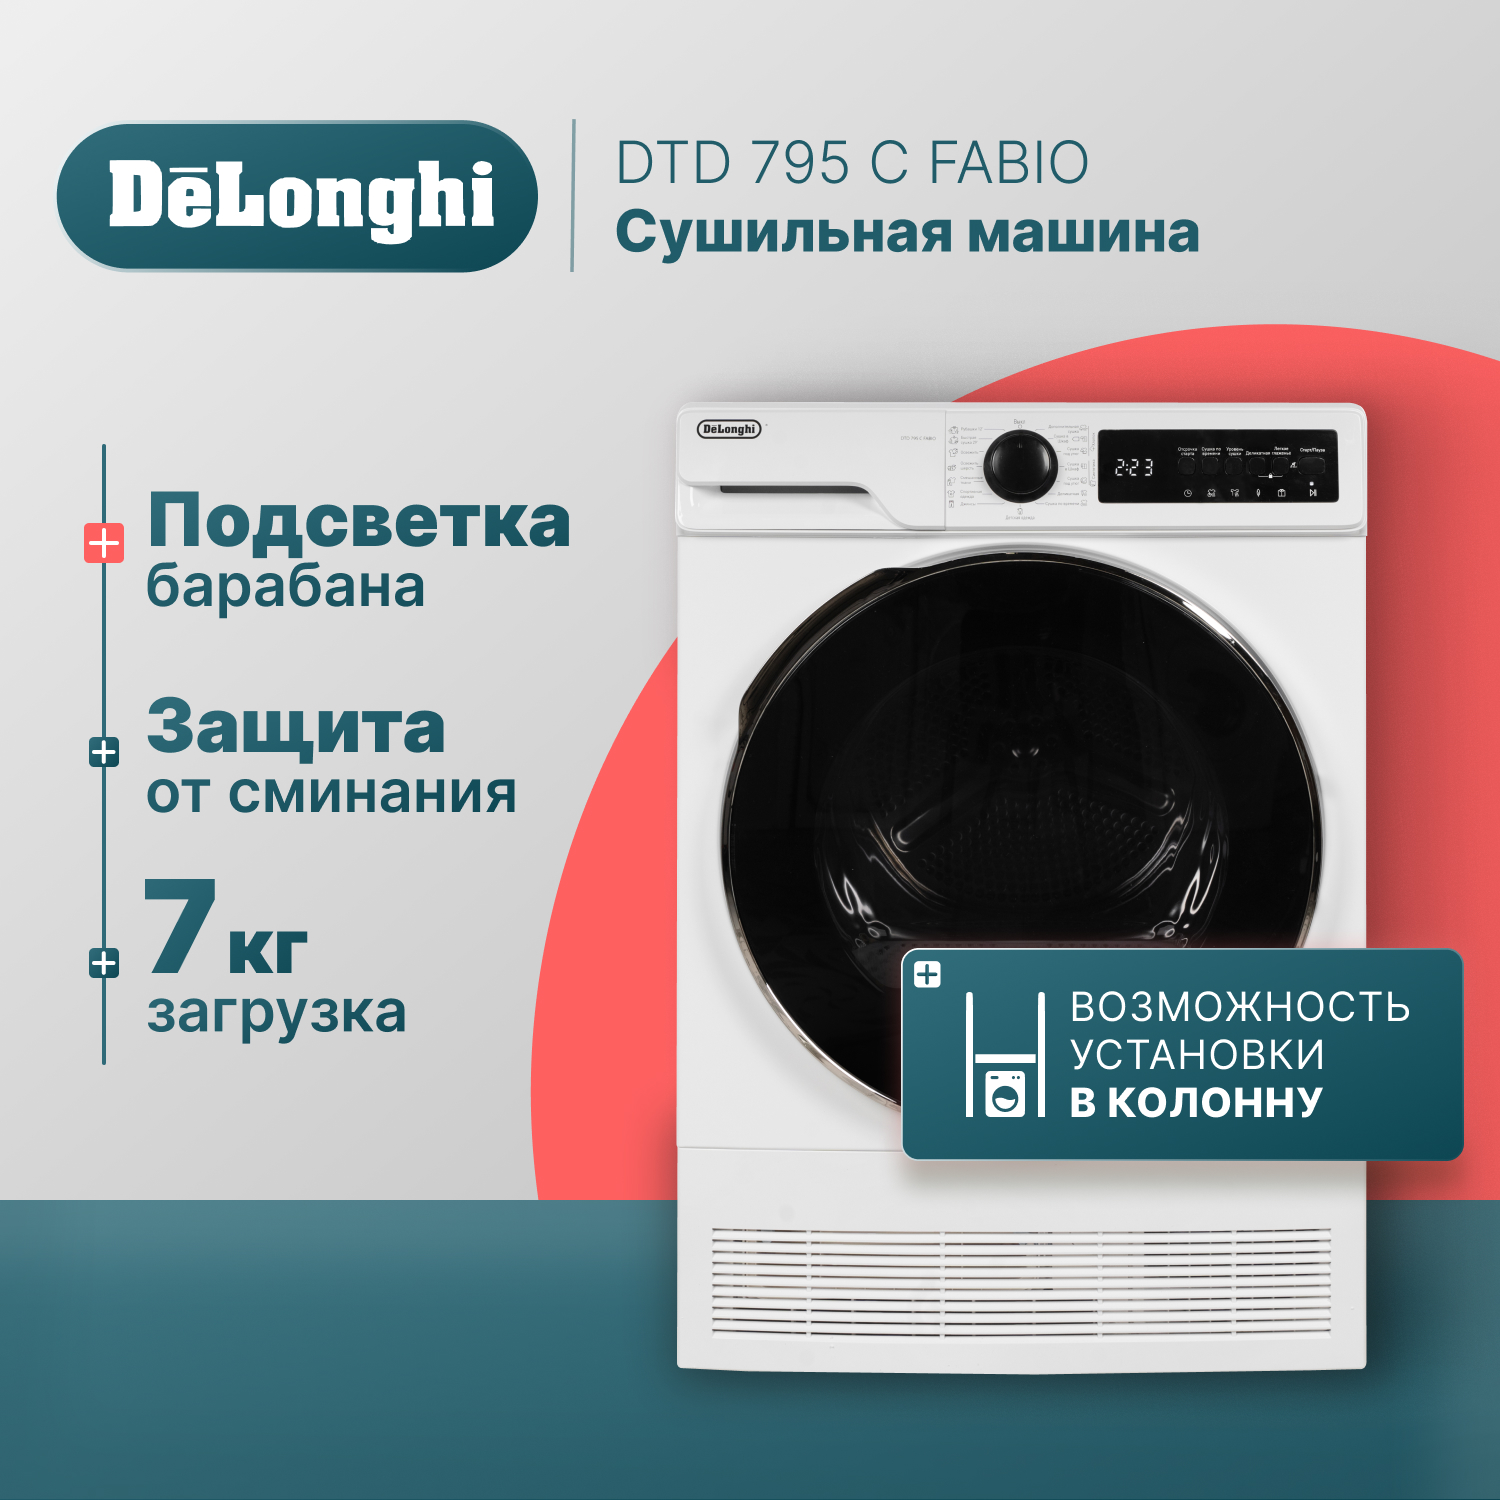 Сушильная машина Delonghi DTD 795 C белый, купить в Москве, цены в интернет-магазинах на Мегамаркет